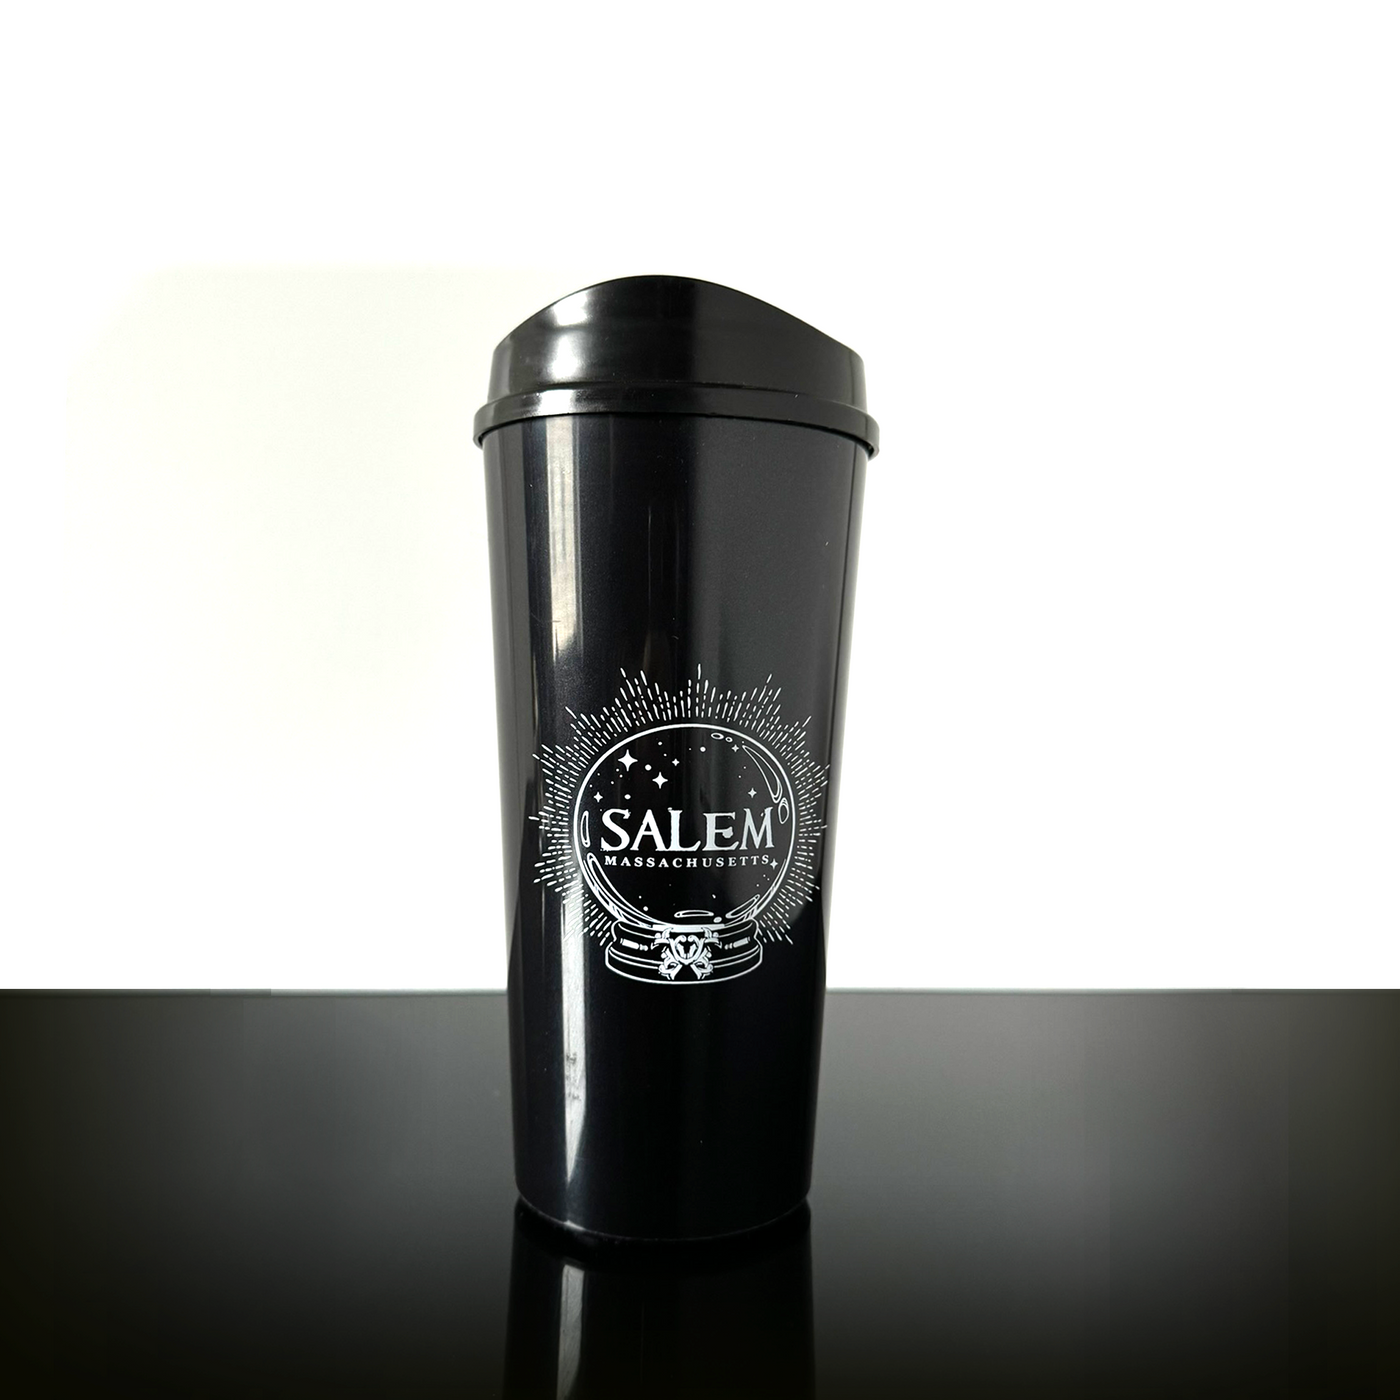 Salem travel mug